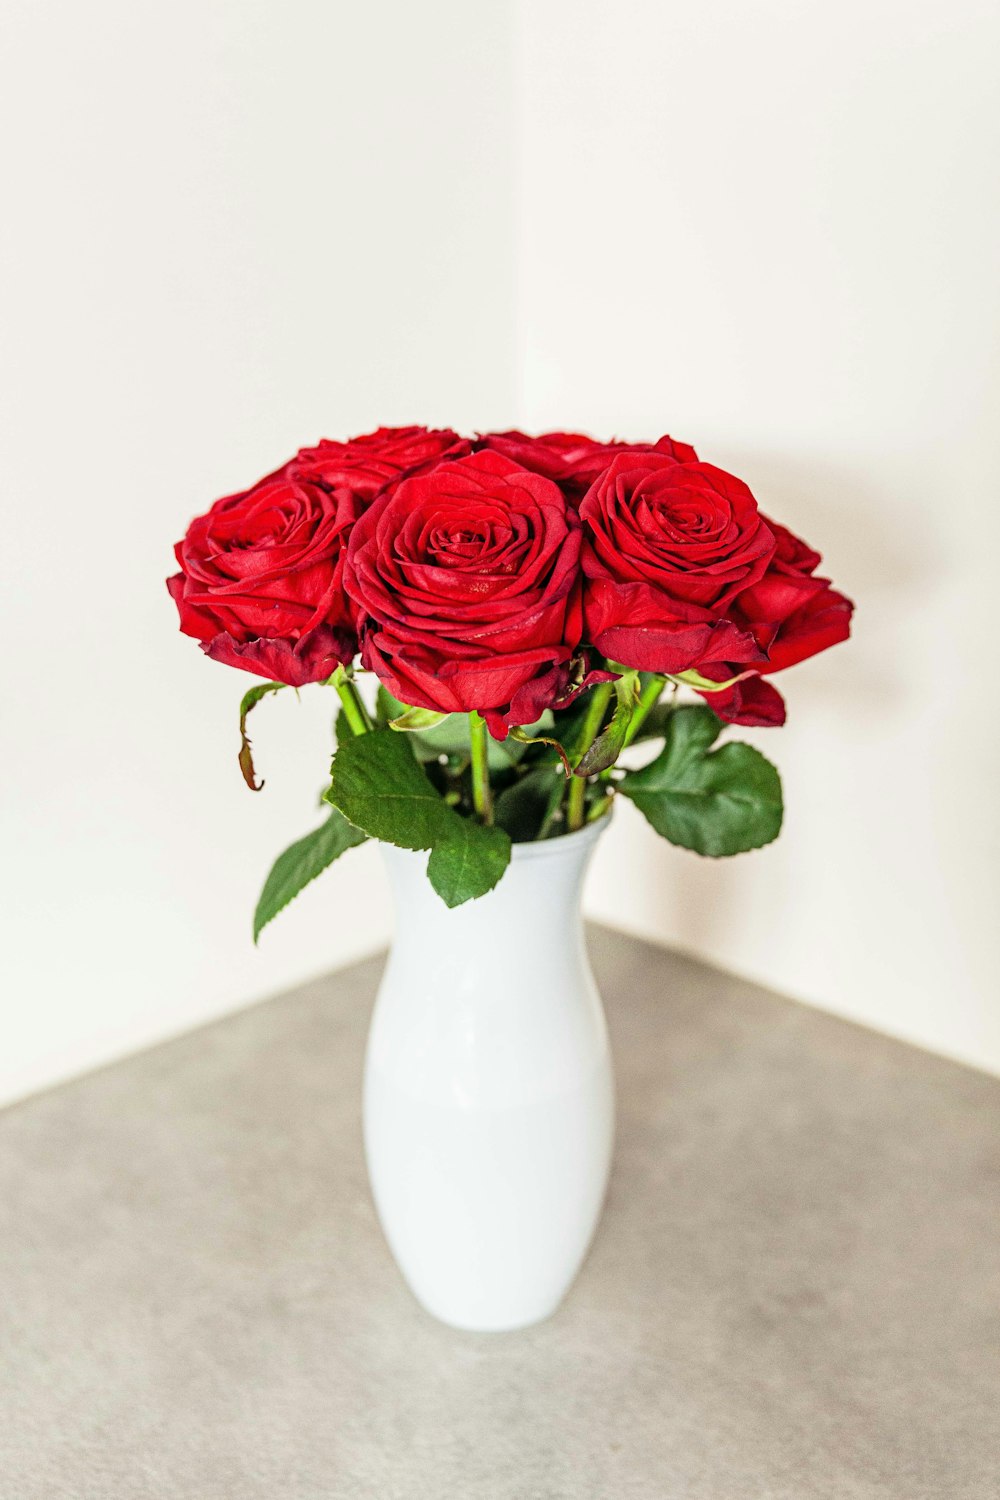 red rose flowers in white vase